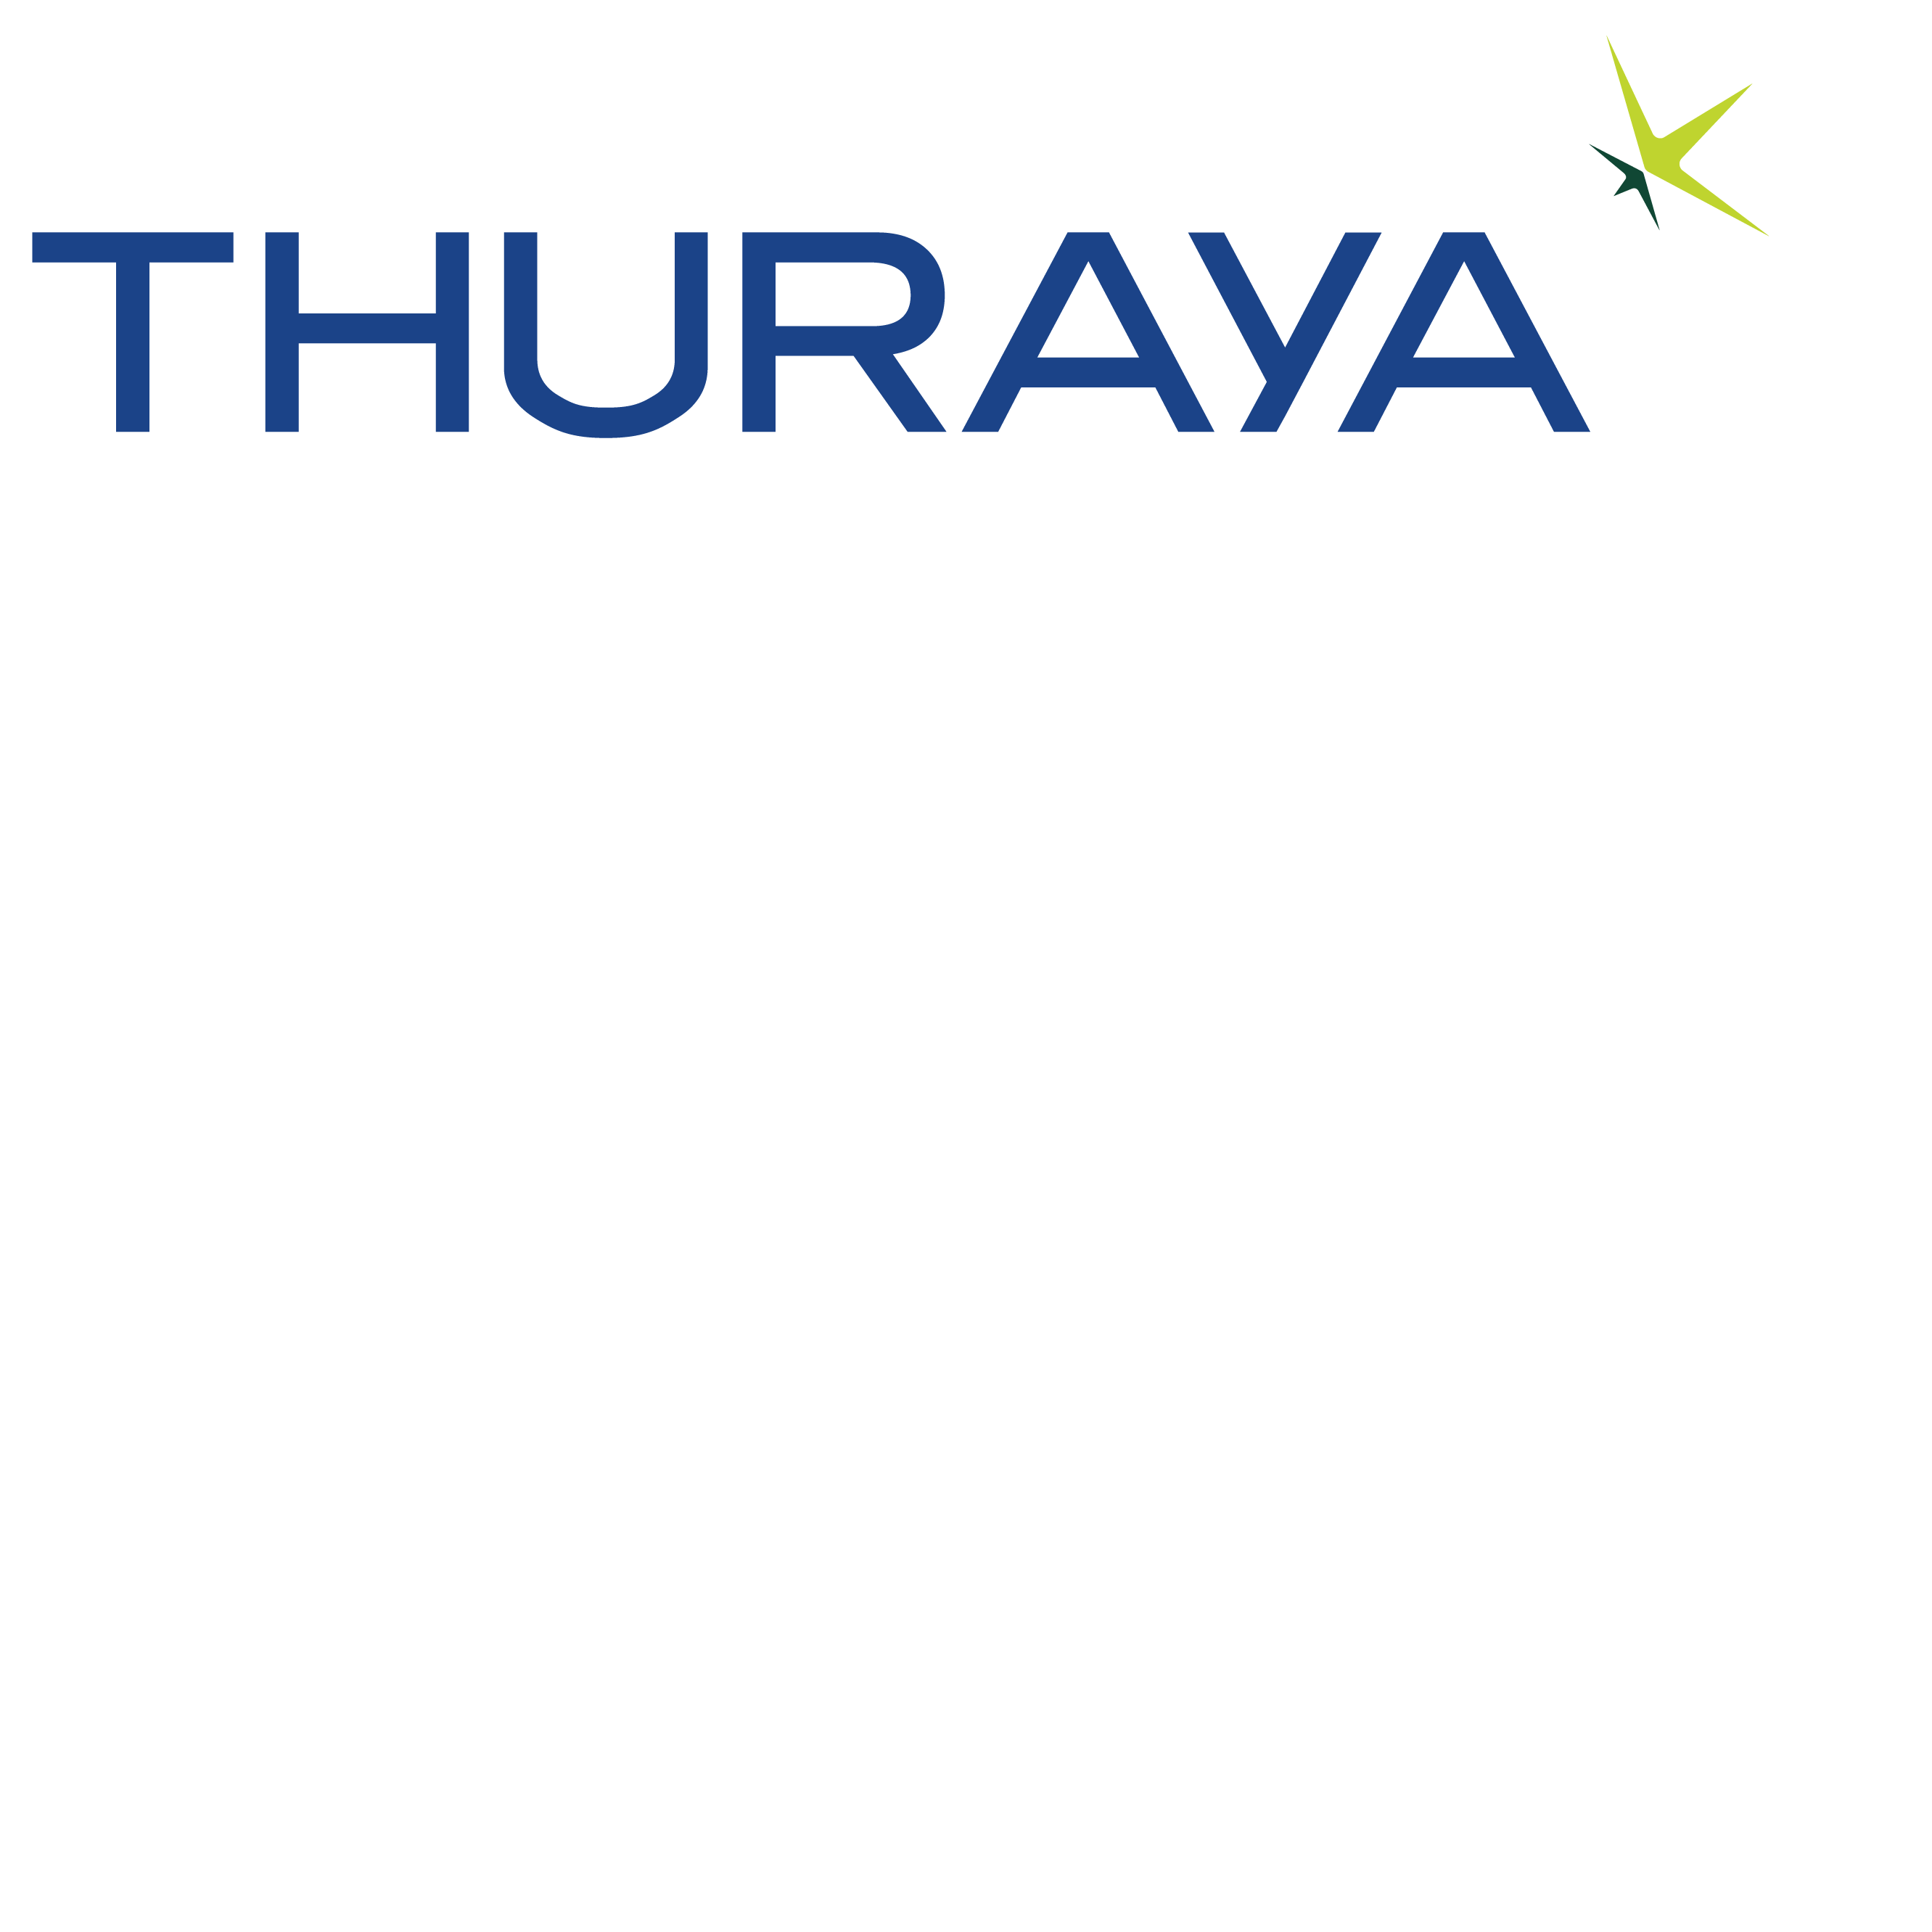 Thuraya Telecommunications